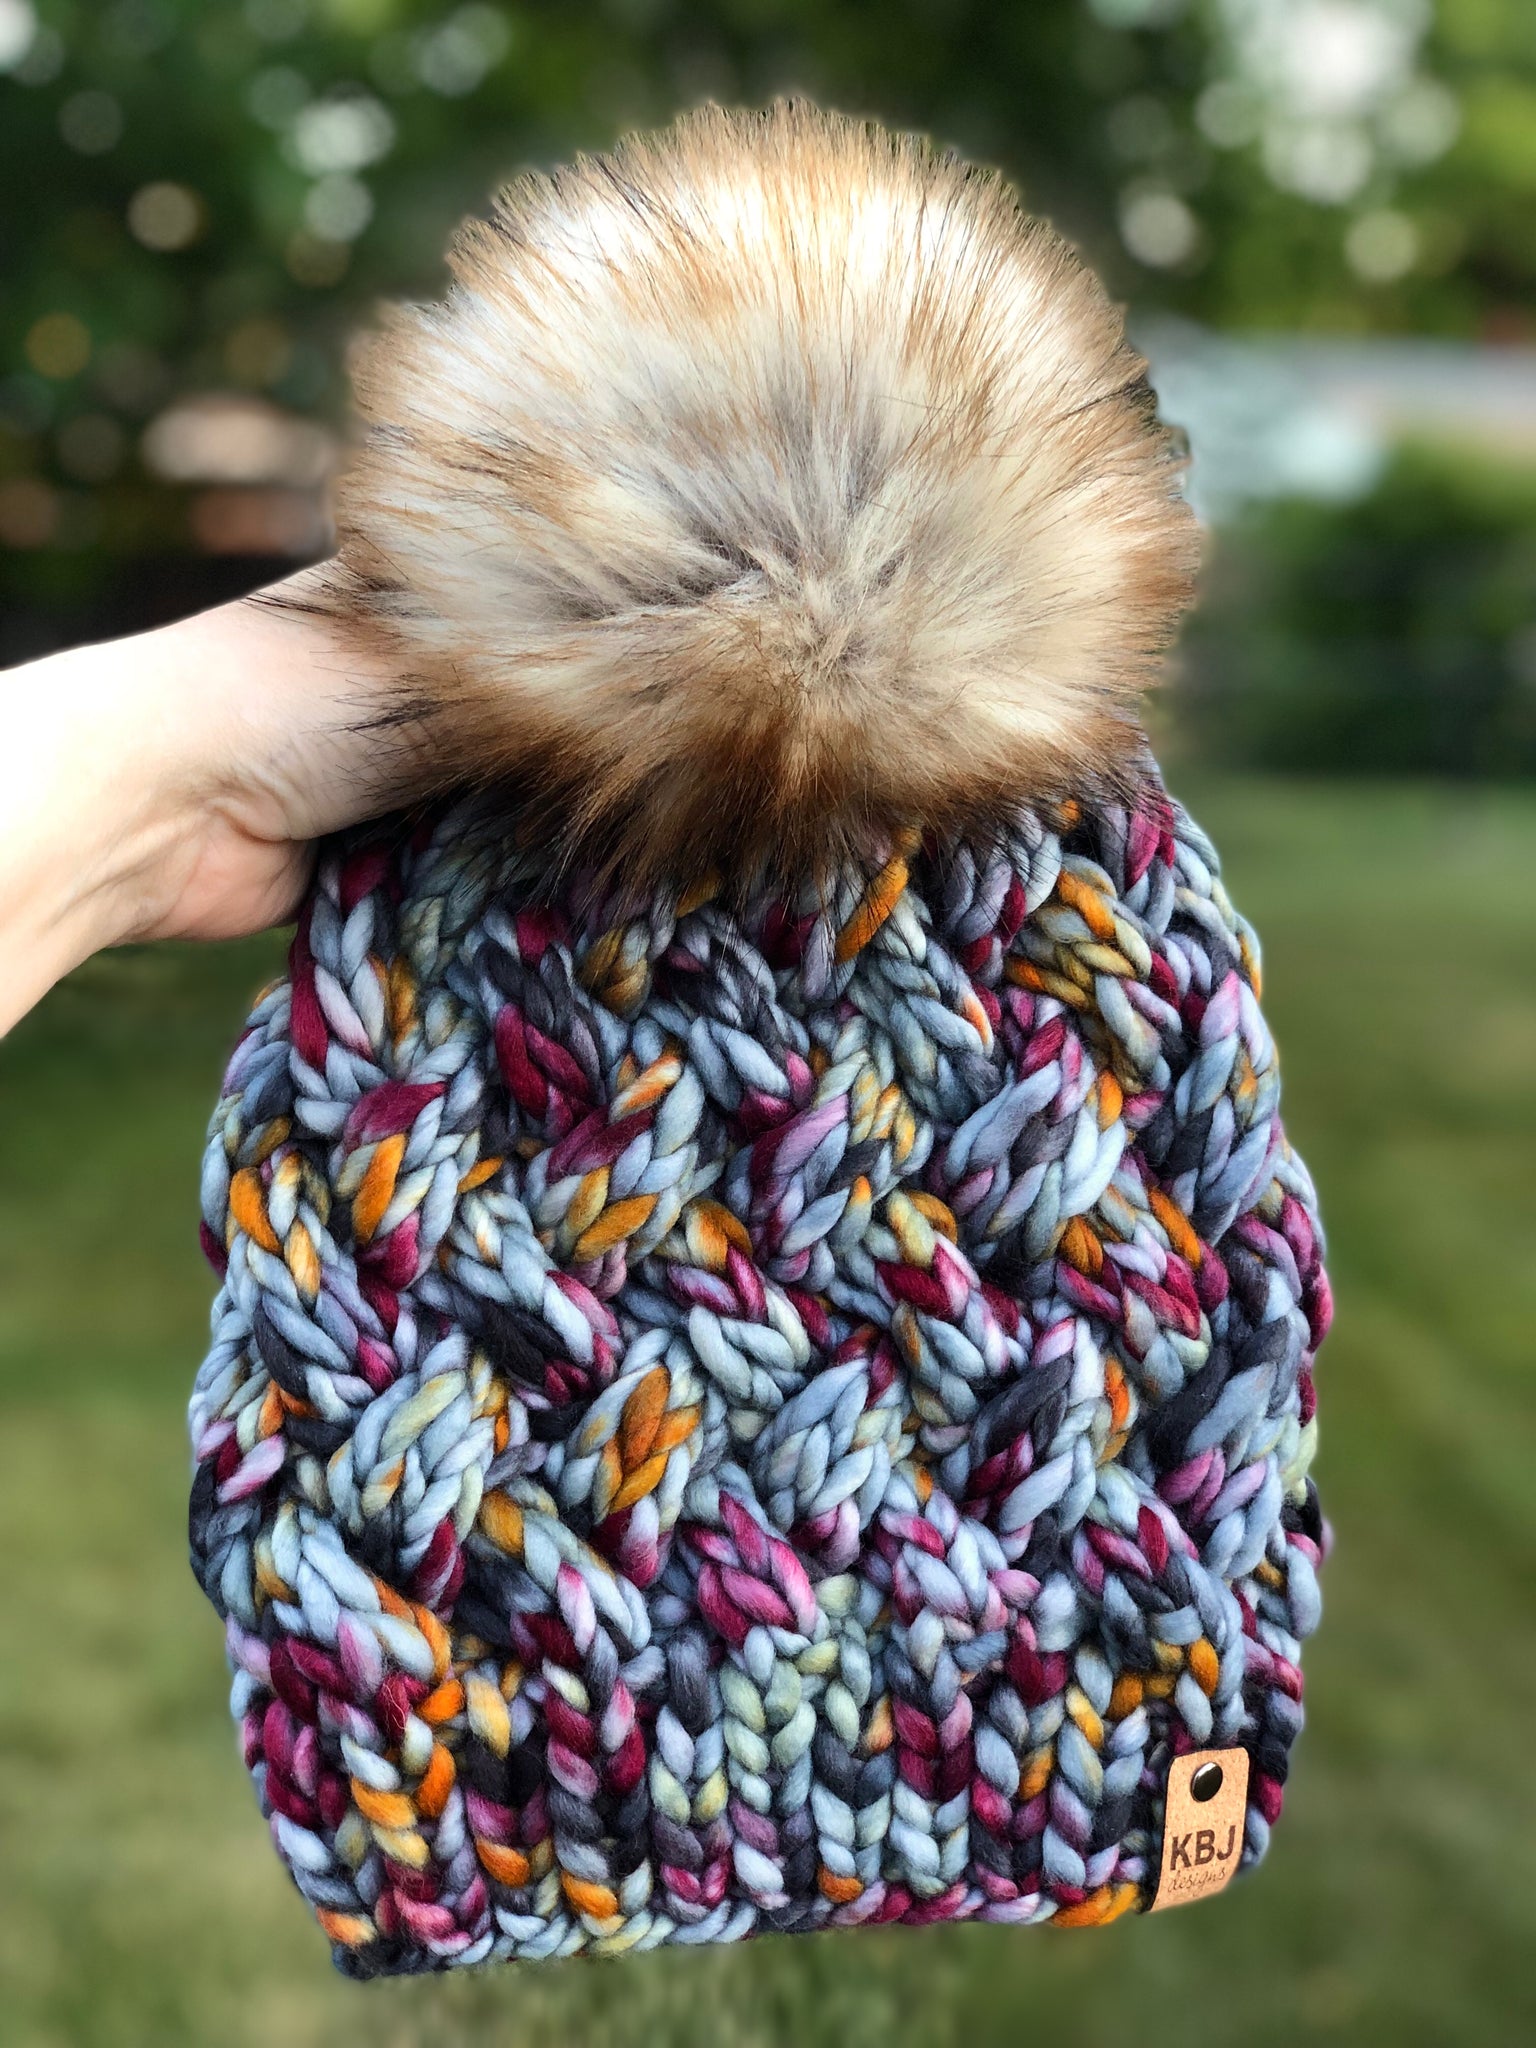 Yukon Slouch LUXURY Handmade 100% Merino Wool Knit Beanie in